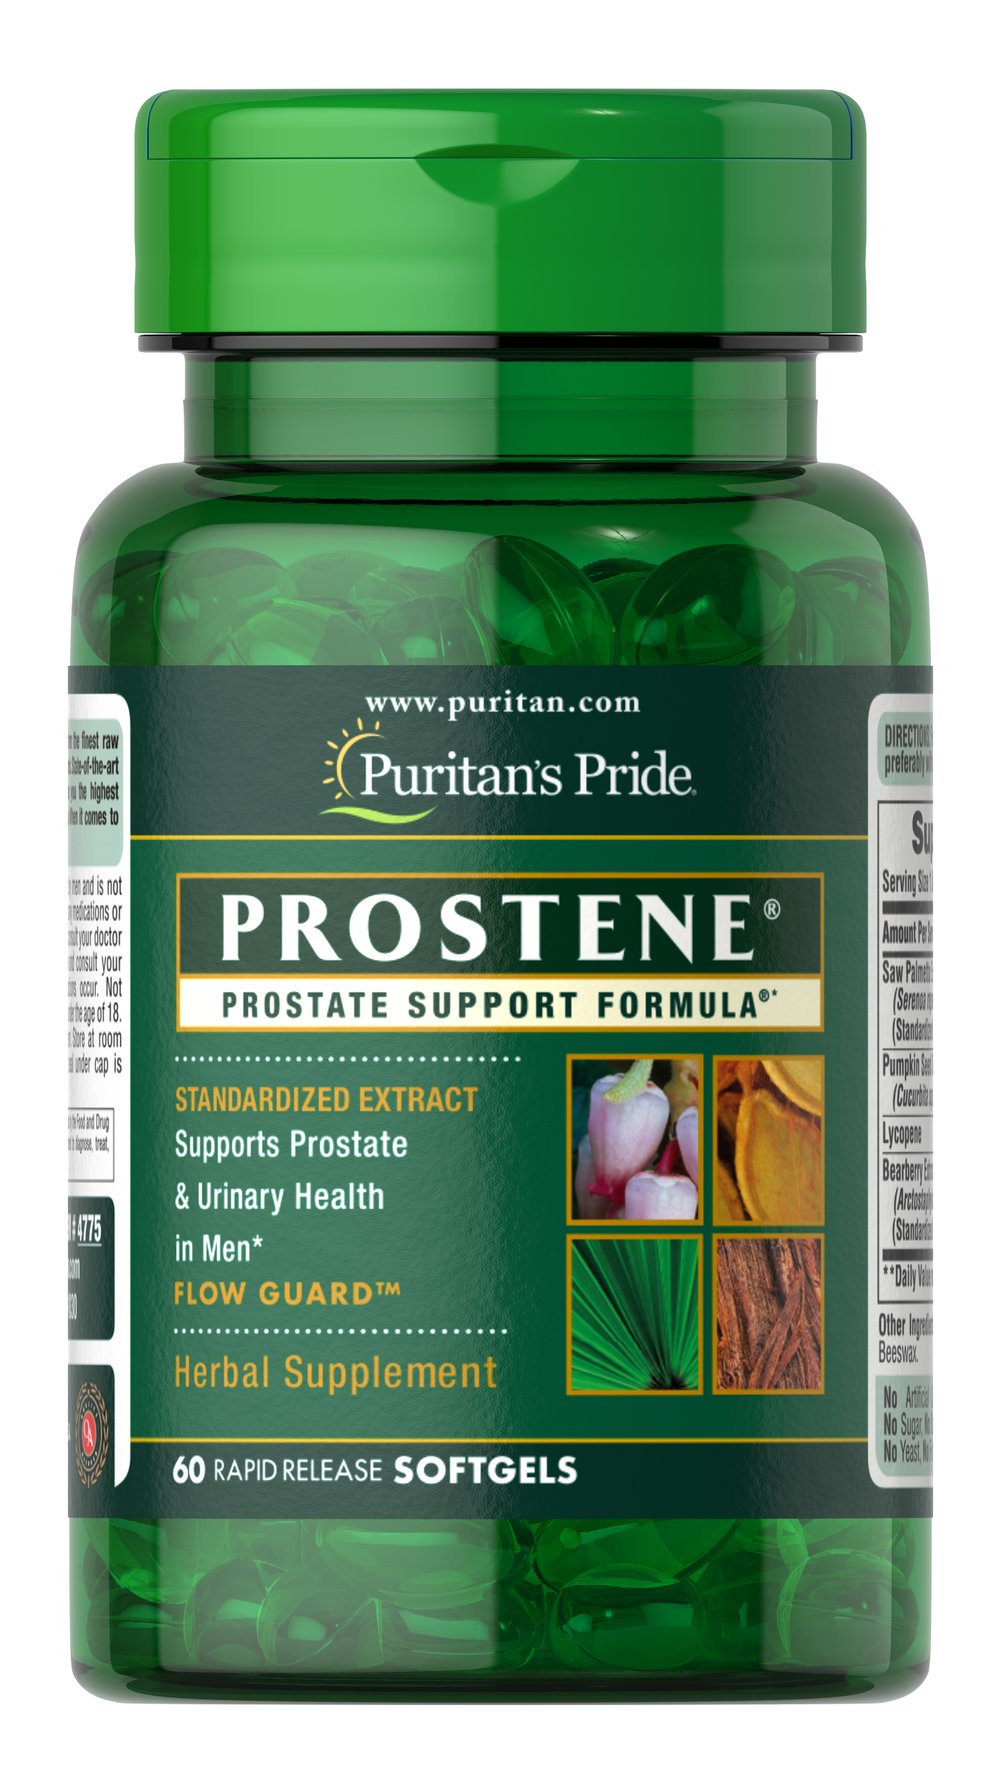  Prostene® 前列腺支持配方®